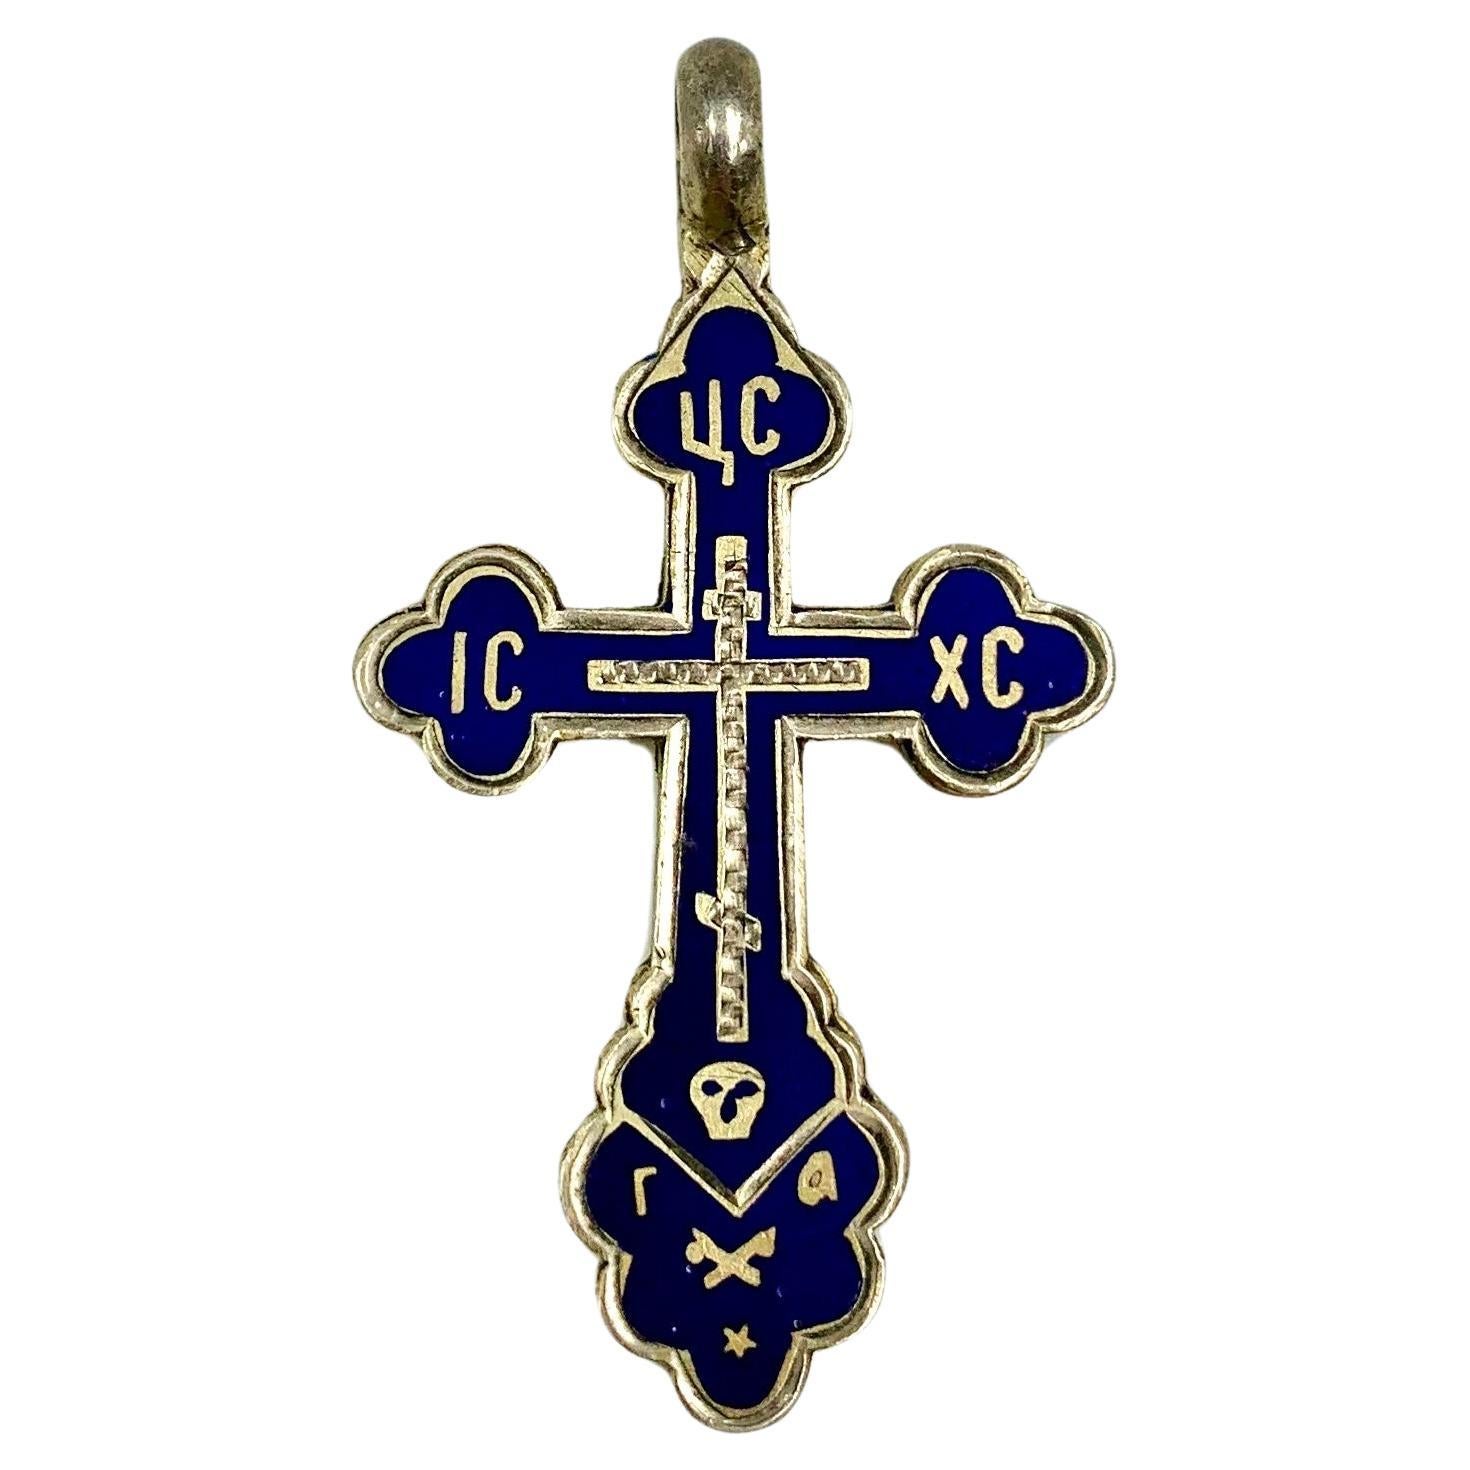 Belle croix russe orthodoxe ancienne en argent émaillé cobalt, 19ème siècle